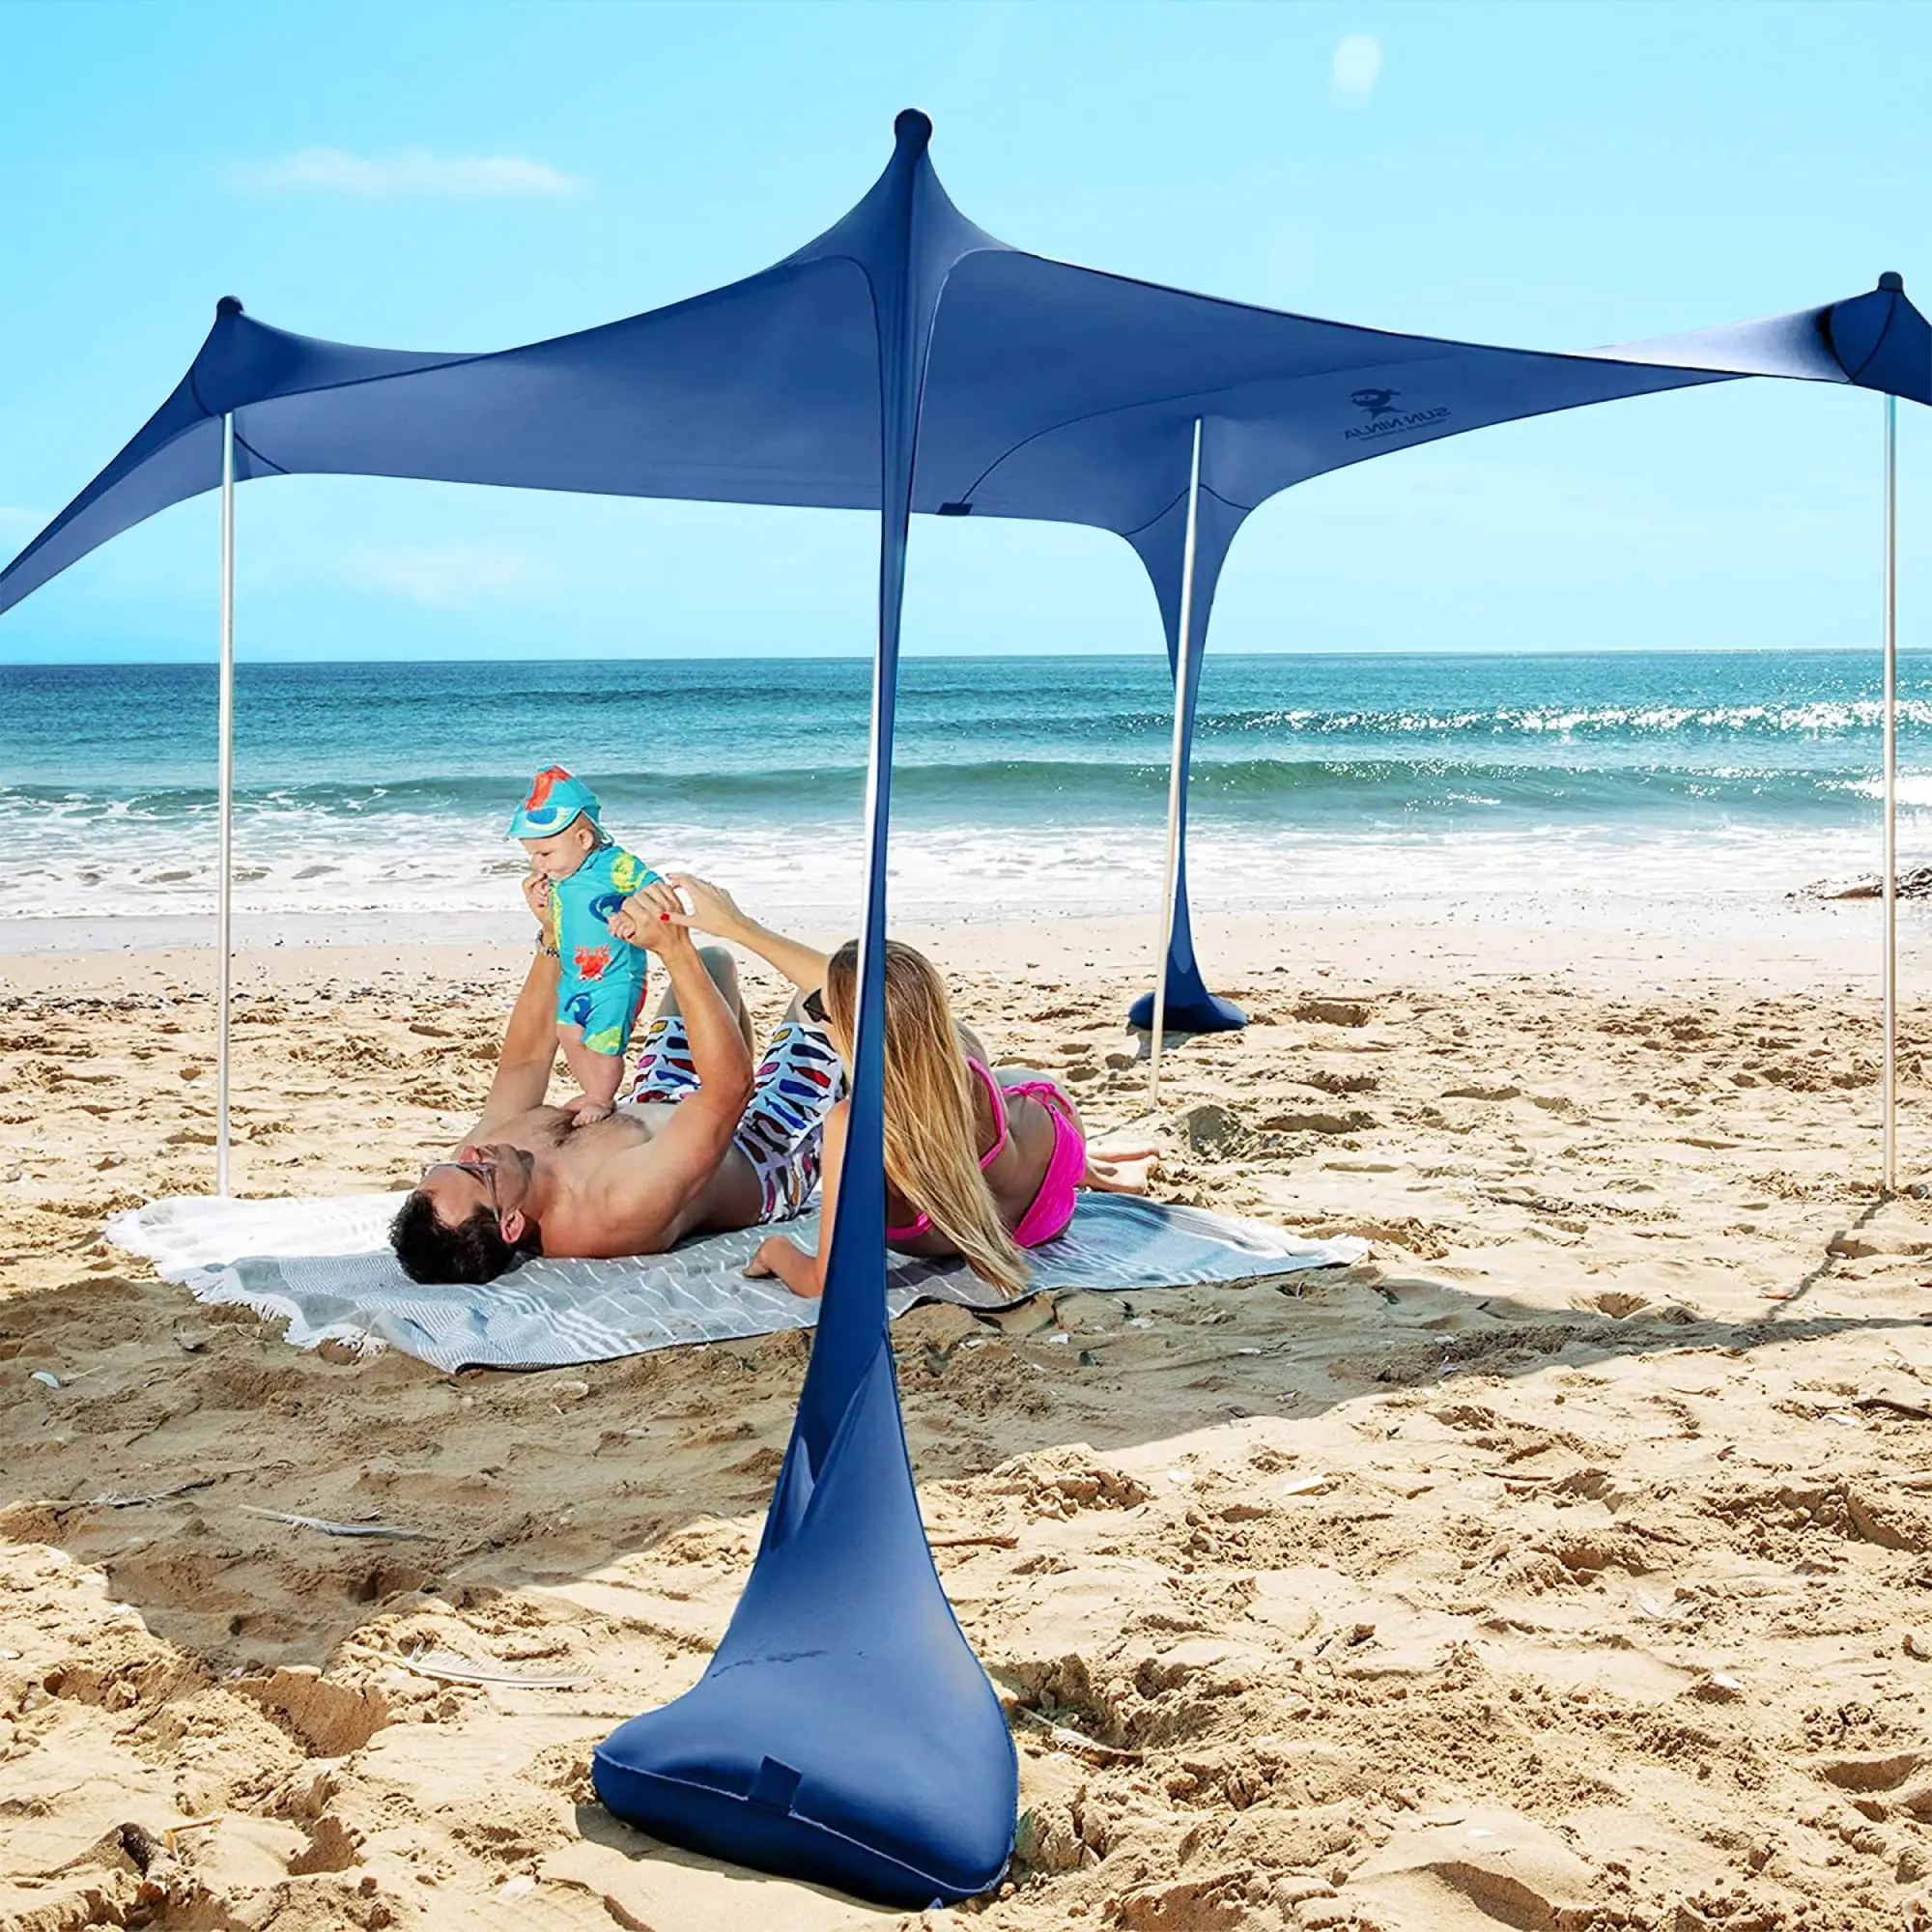 गर्मियों आसान पोर्टेबल एयर आधार डेरा डाले हुए Tenda दा Spiaggia चंदवा समुद्र तट शिविर आउटडोर लाइक्रा तम्बू चंदवा आश्रय पॉप अप समुद्र तट तम्बू